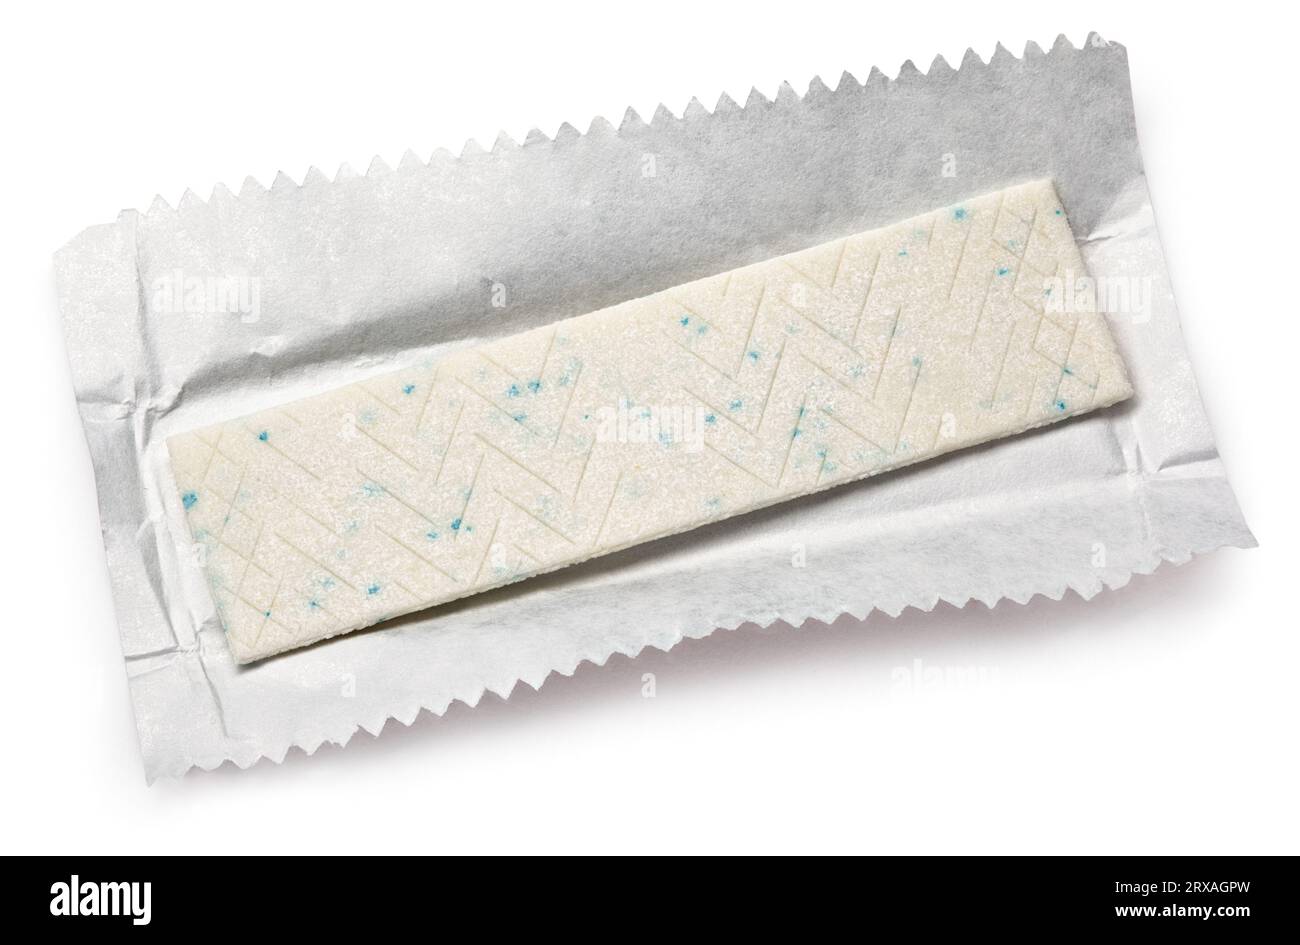 La gomma da masticare della piastra sulla carta di avvolgimento isolato su bianco Foto Stock